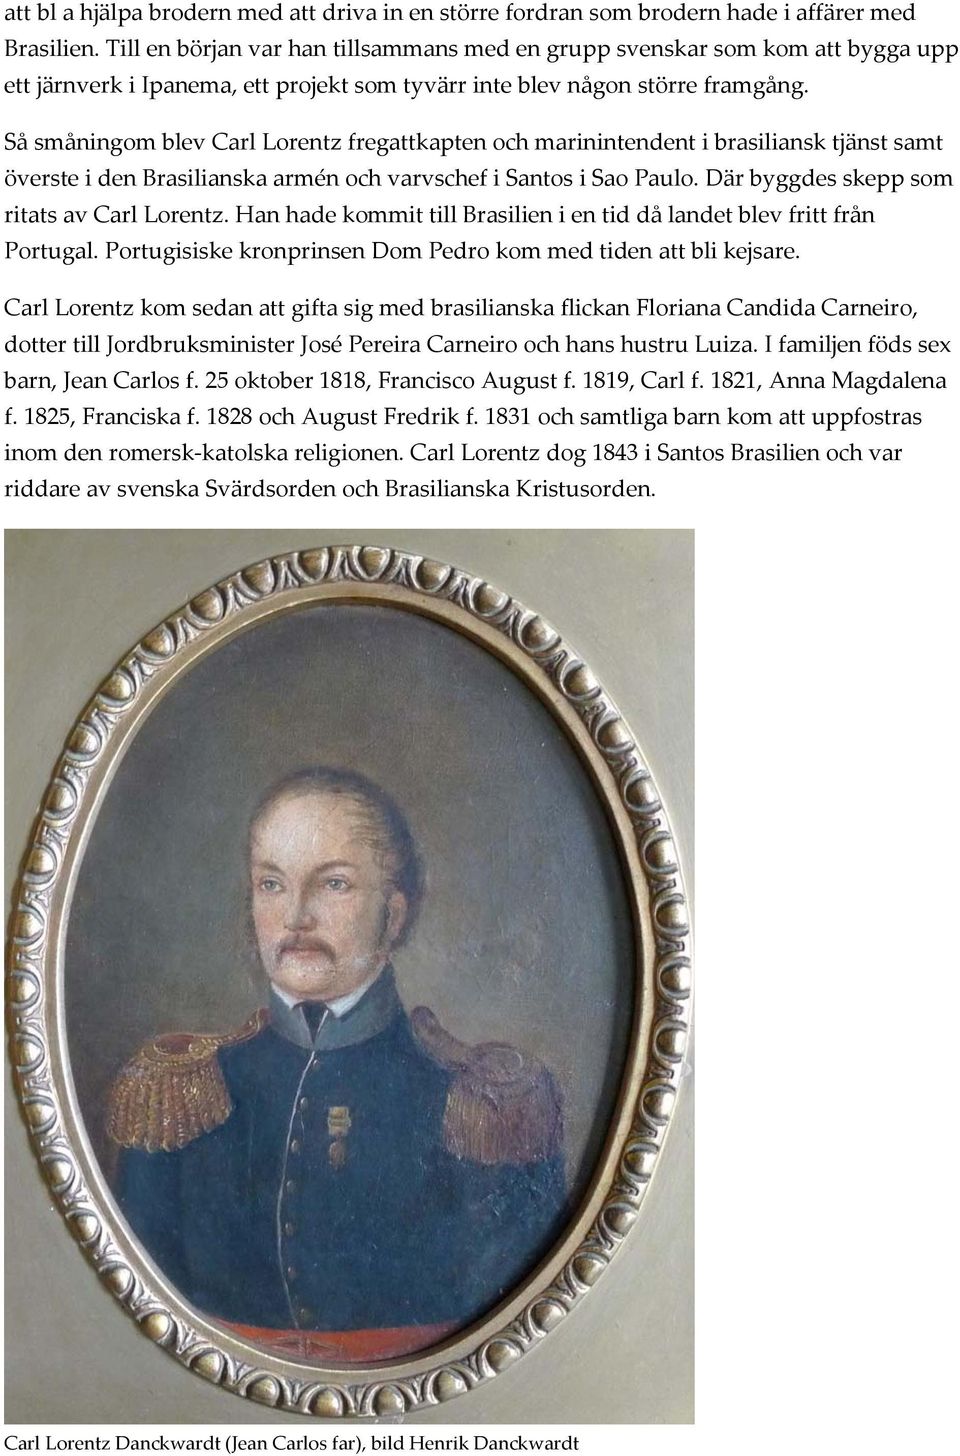 Så småningom blev Carl Lorentz fregattkapten och marinintendent i brasiliansk tjänst samt överste i den Brasilianska armén och varvschef i Santos i Sao Paulo.